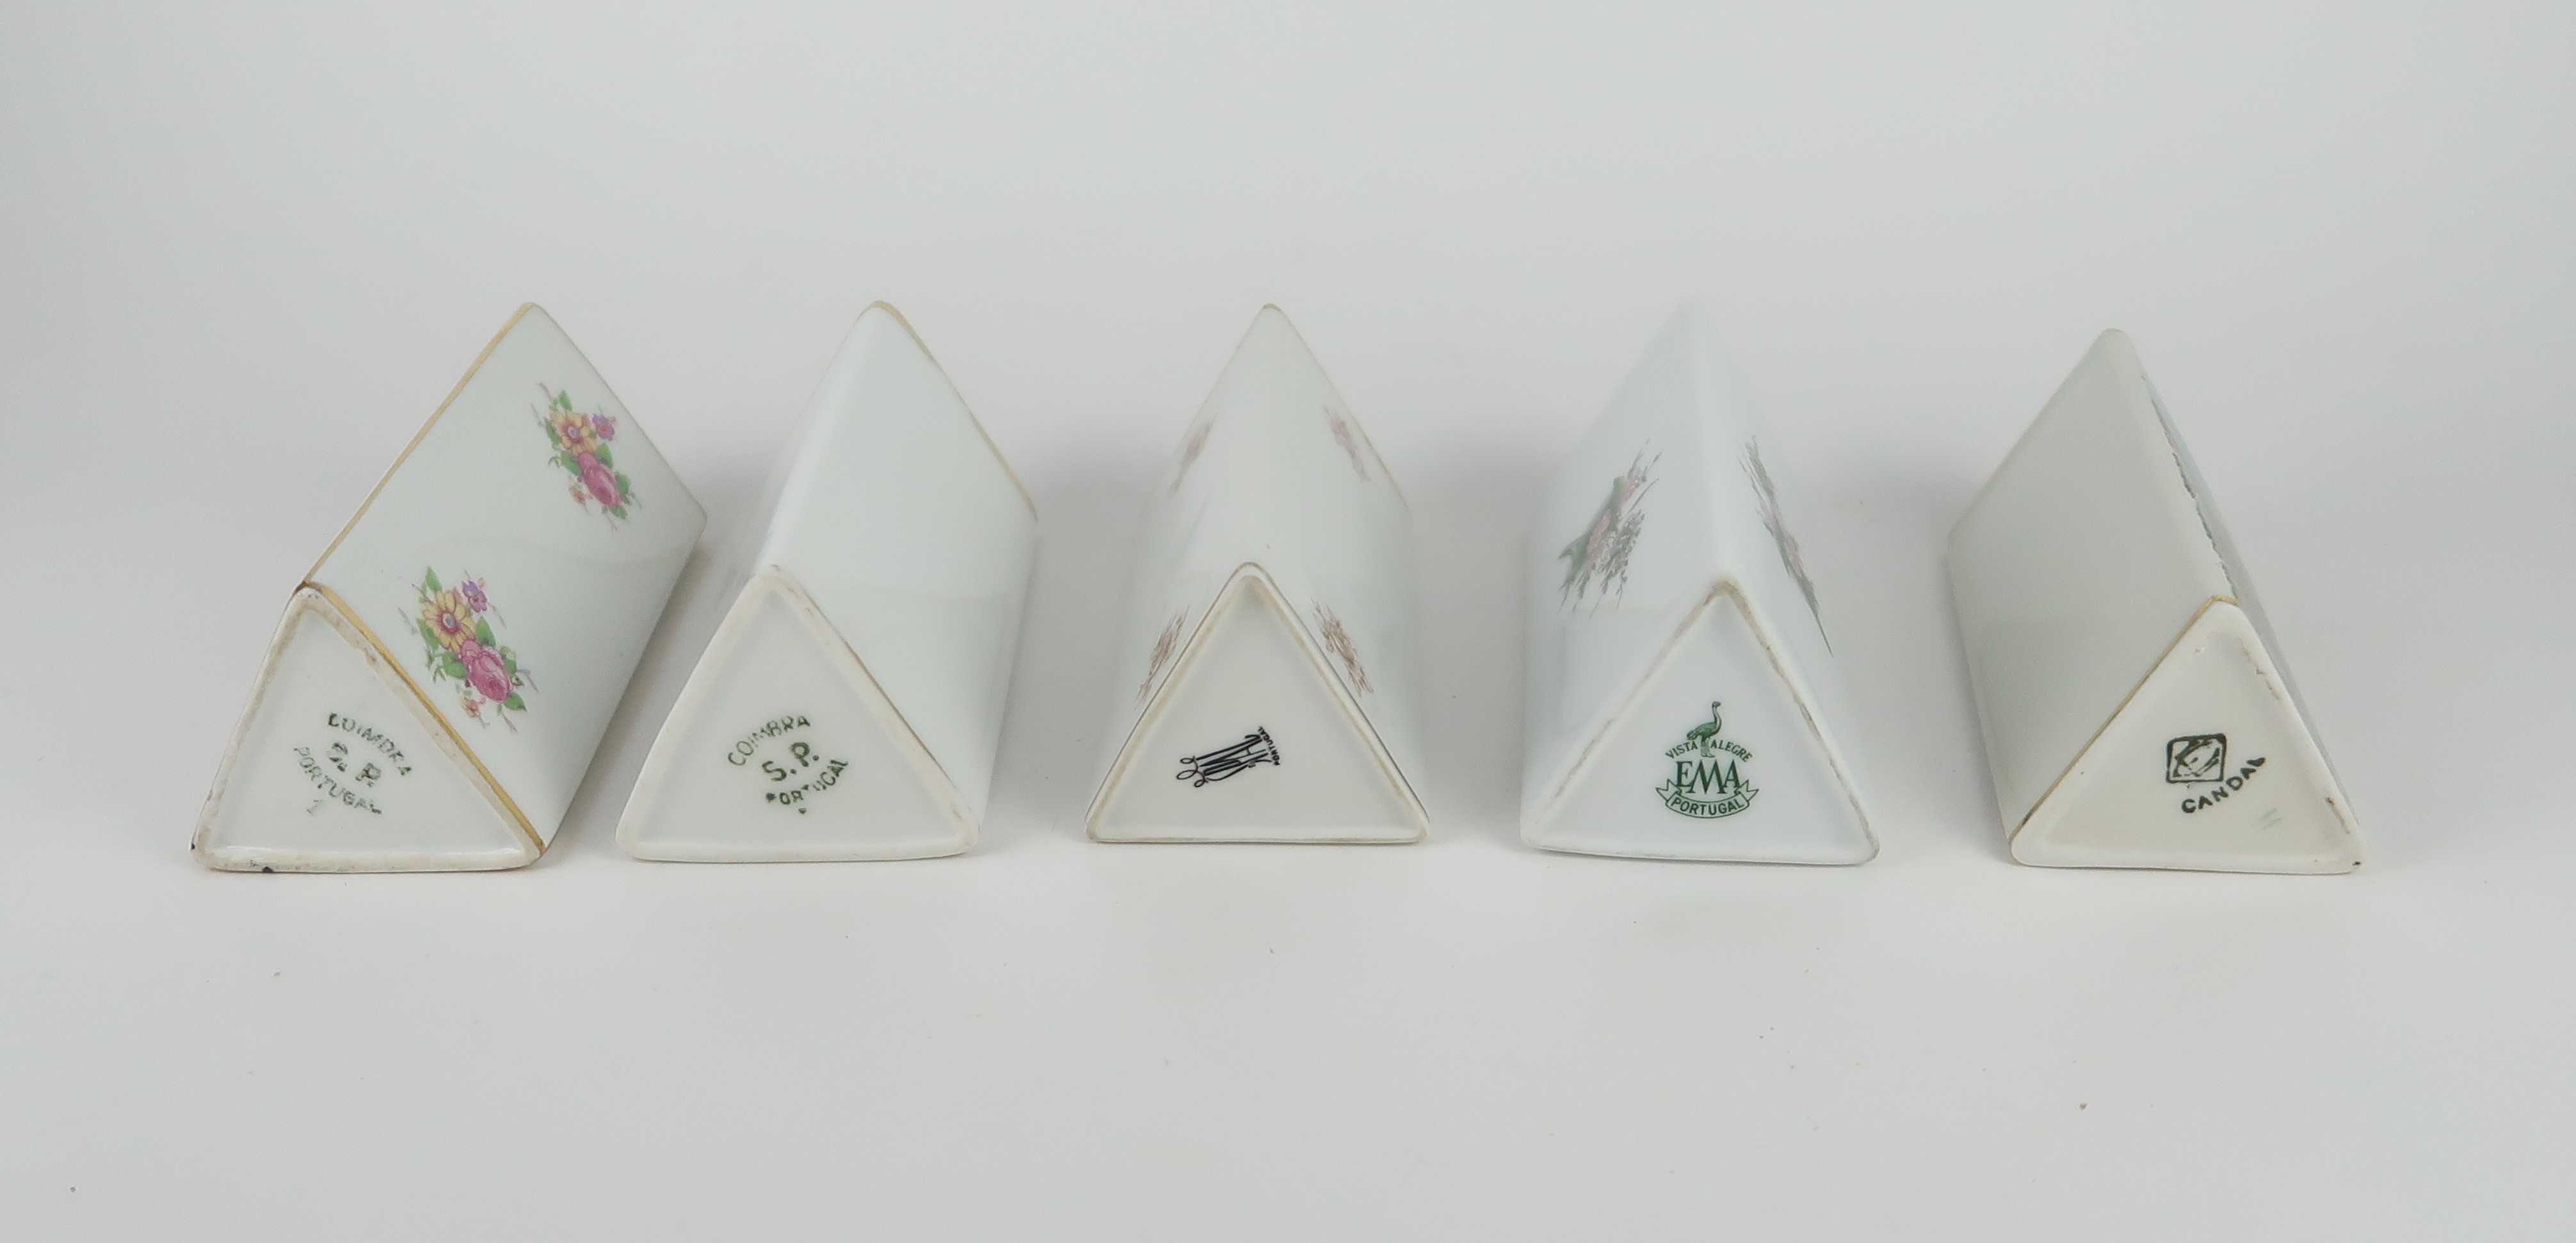 Paliteiros triangulares em porcelana, cada